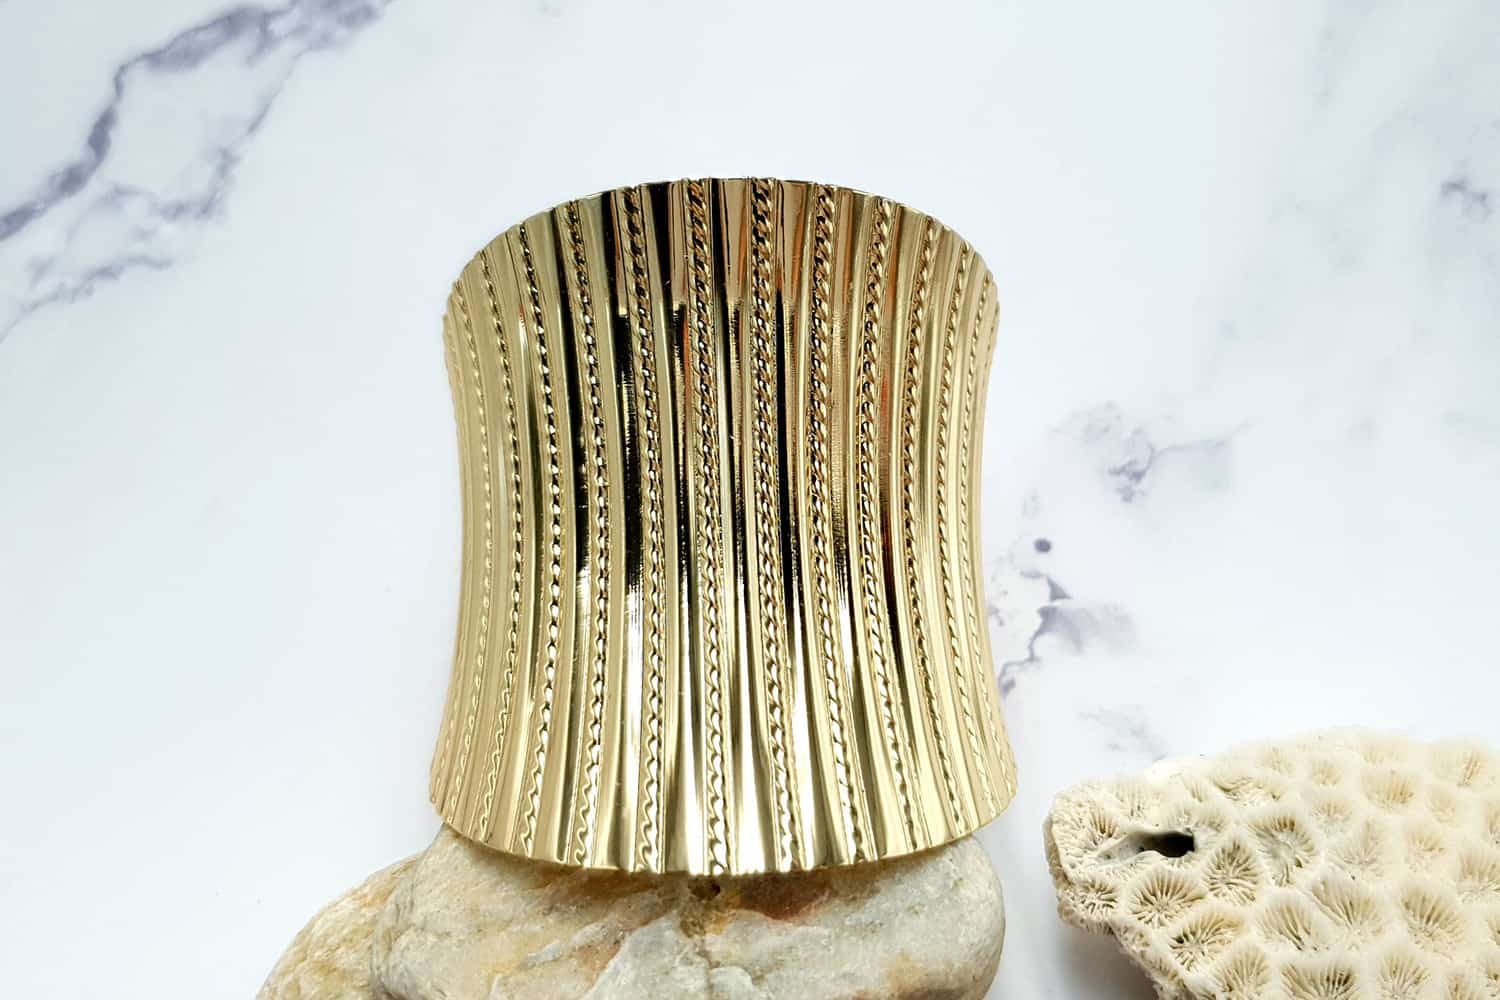 Bracelet metal base stripes pattern, golden color (23404)